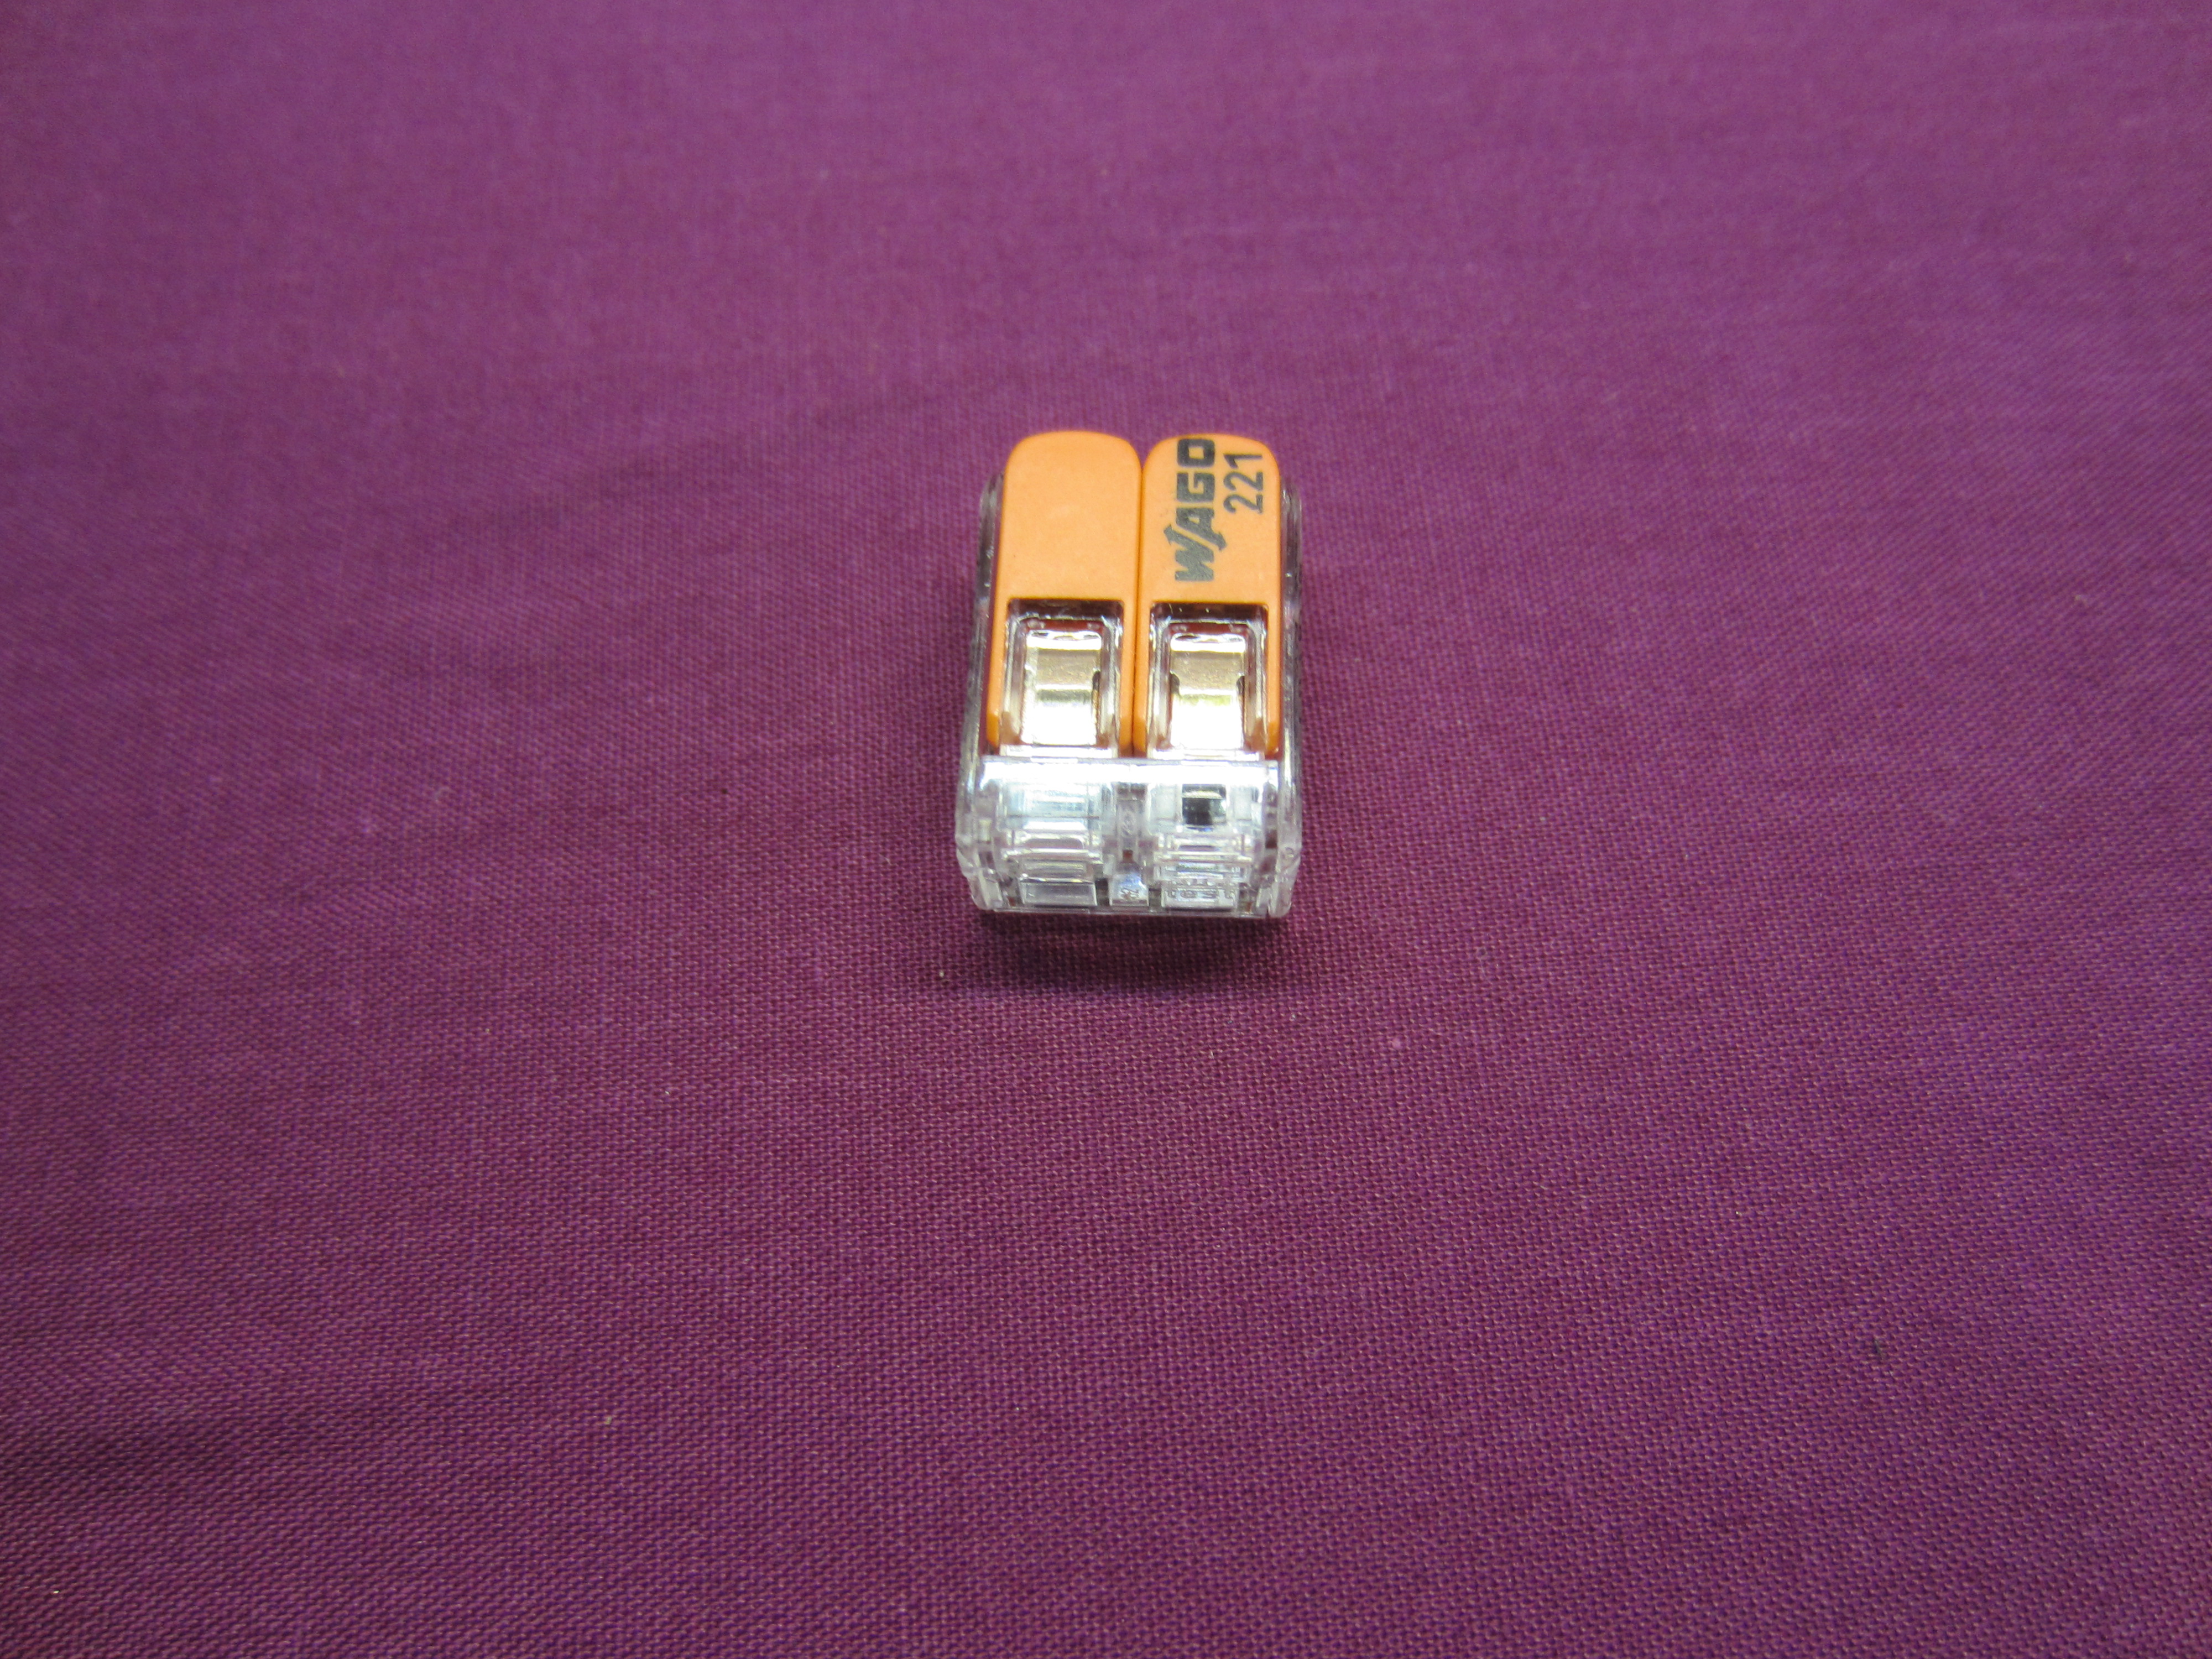 Wago 221-412 Splicing Connector, 2 conductors